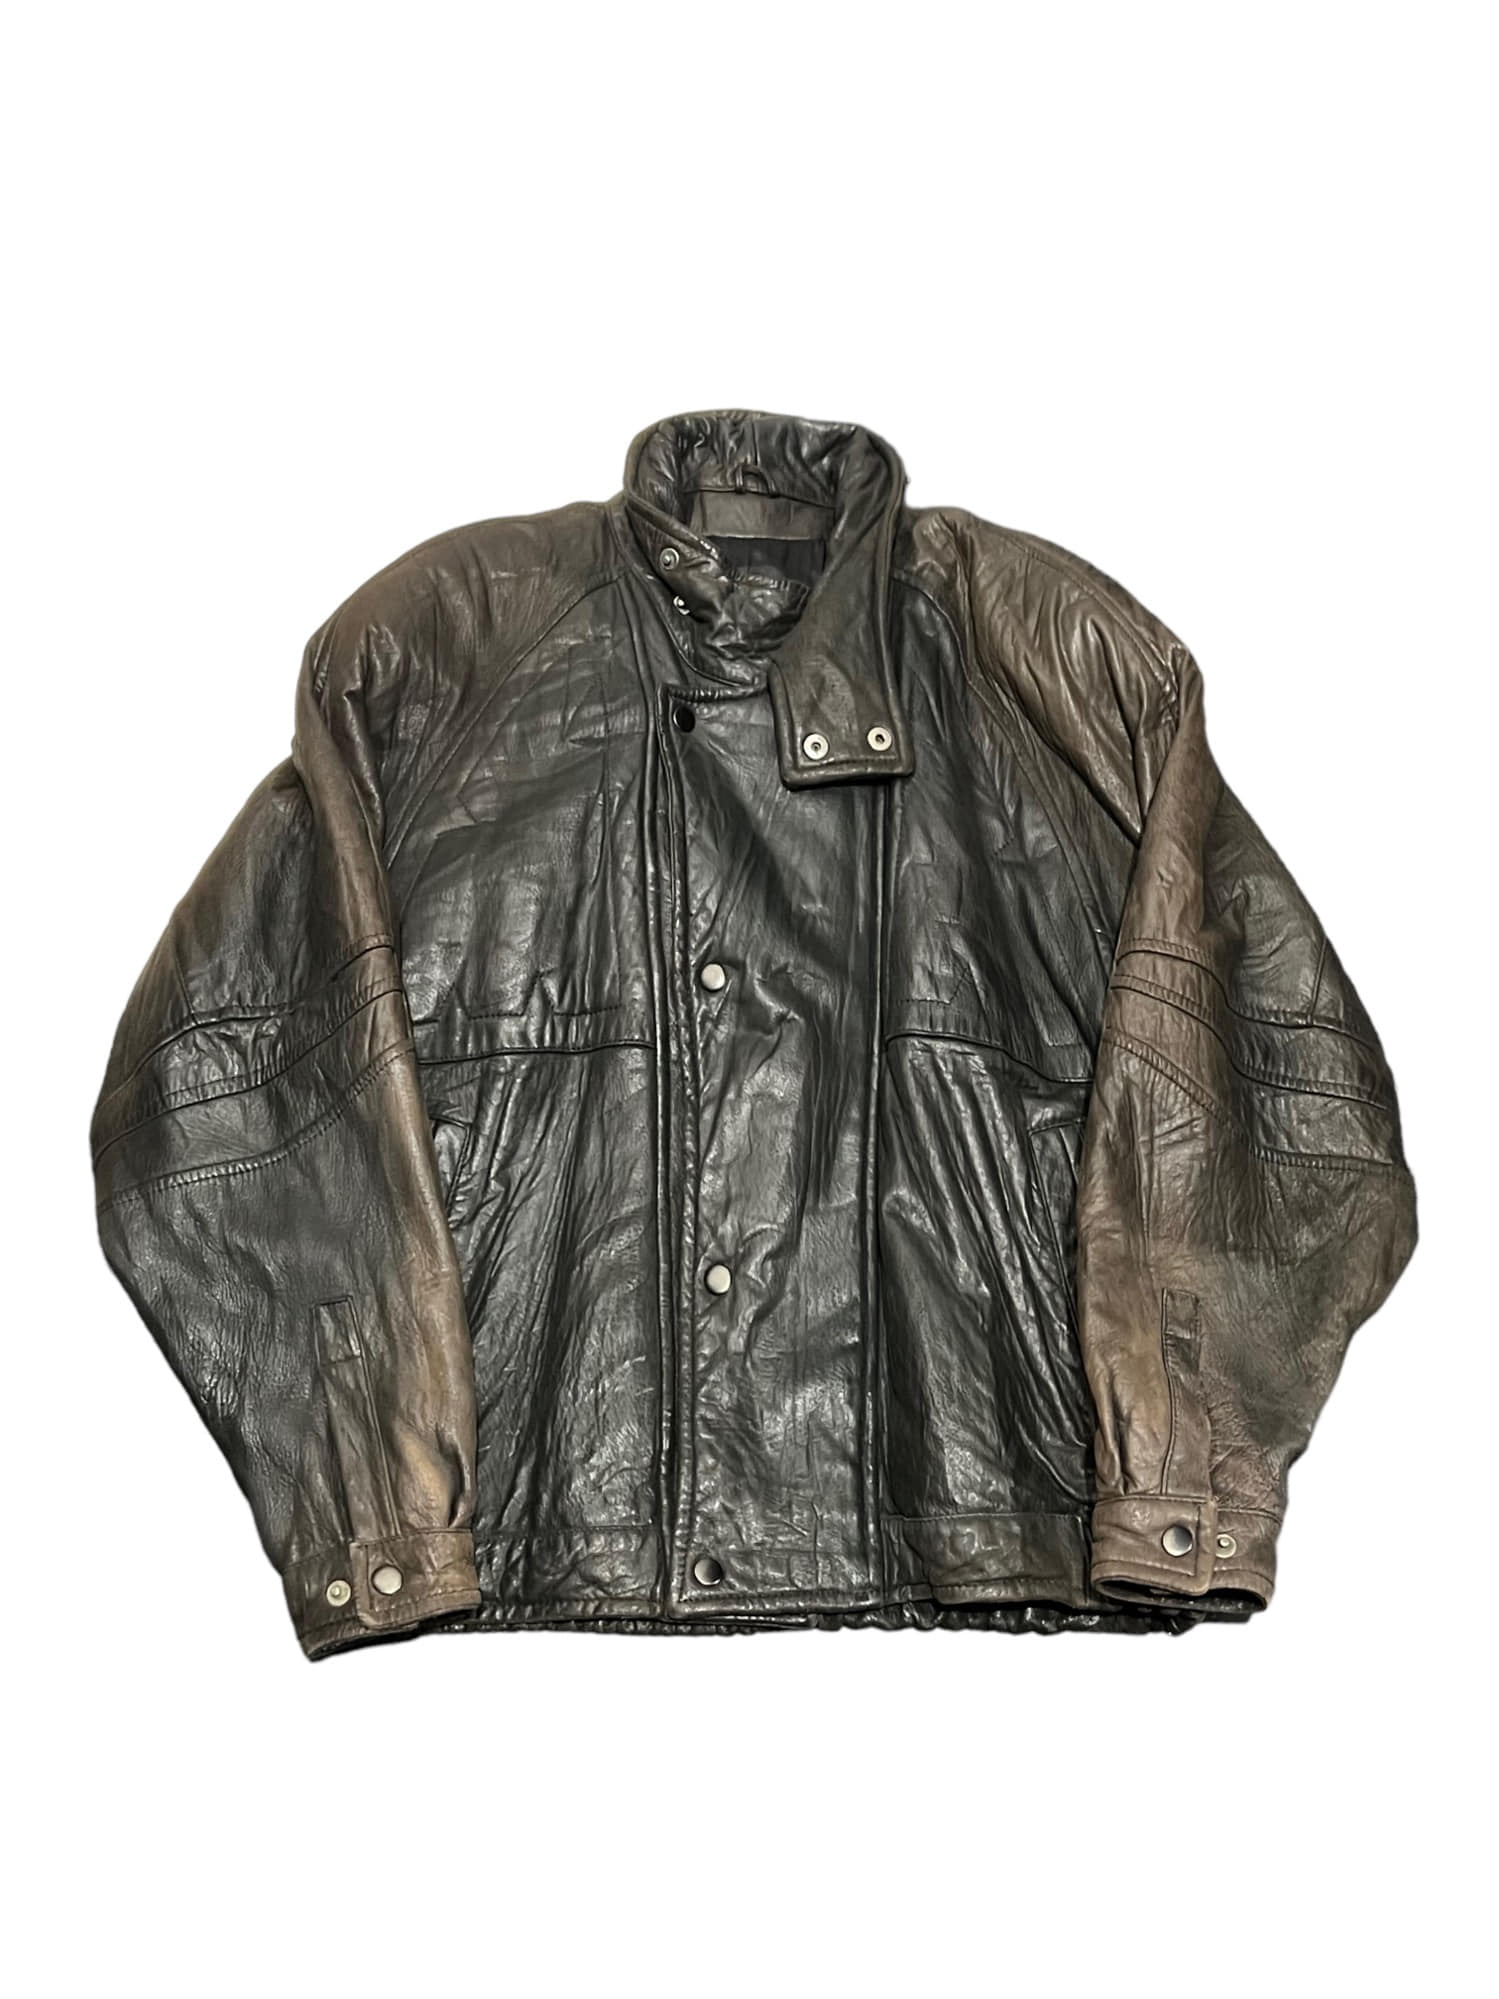 Vinatge Real Leather Overfit Bomber Jacket